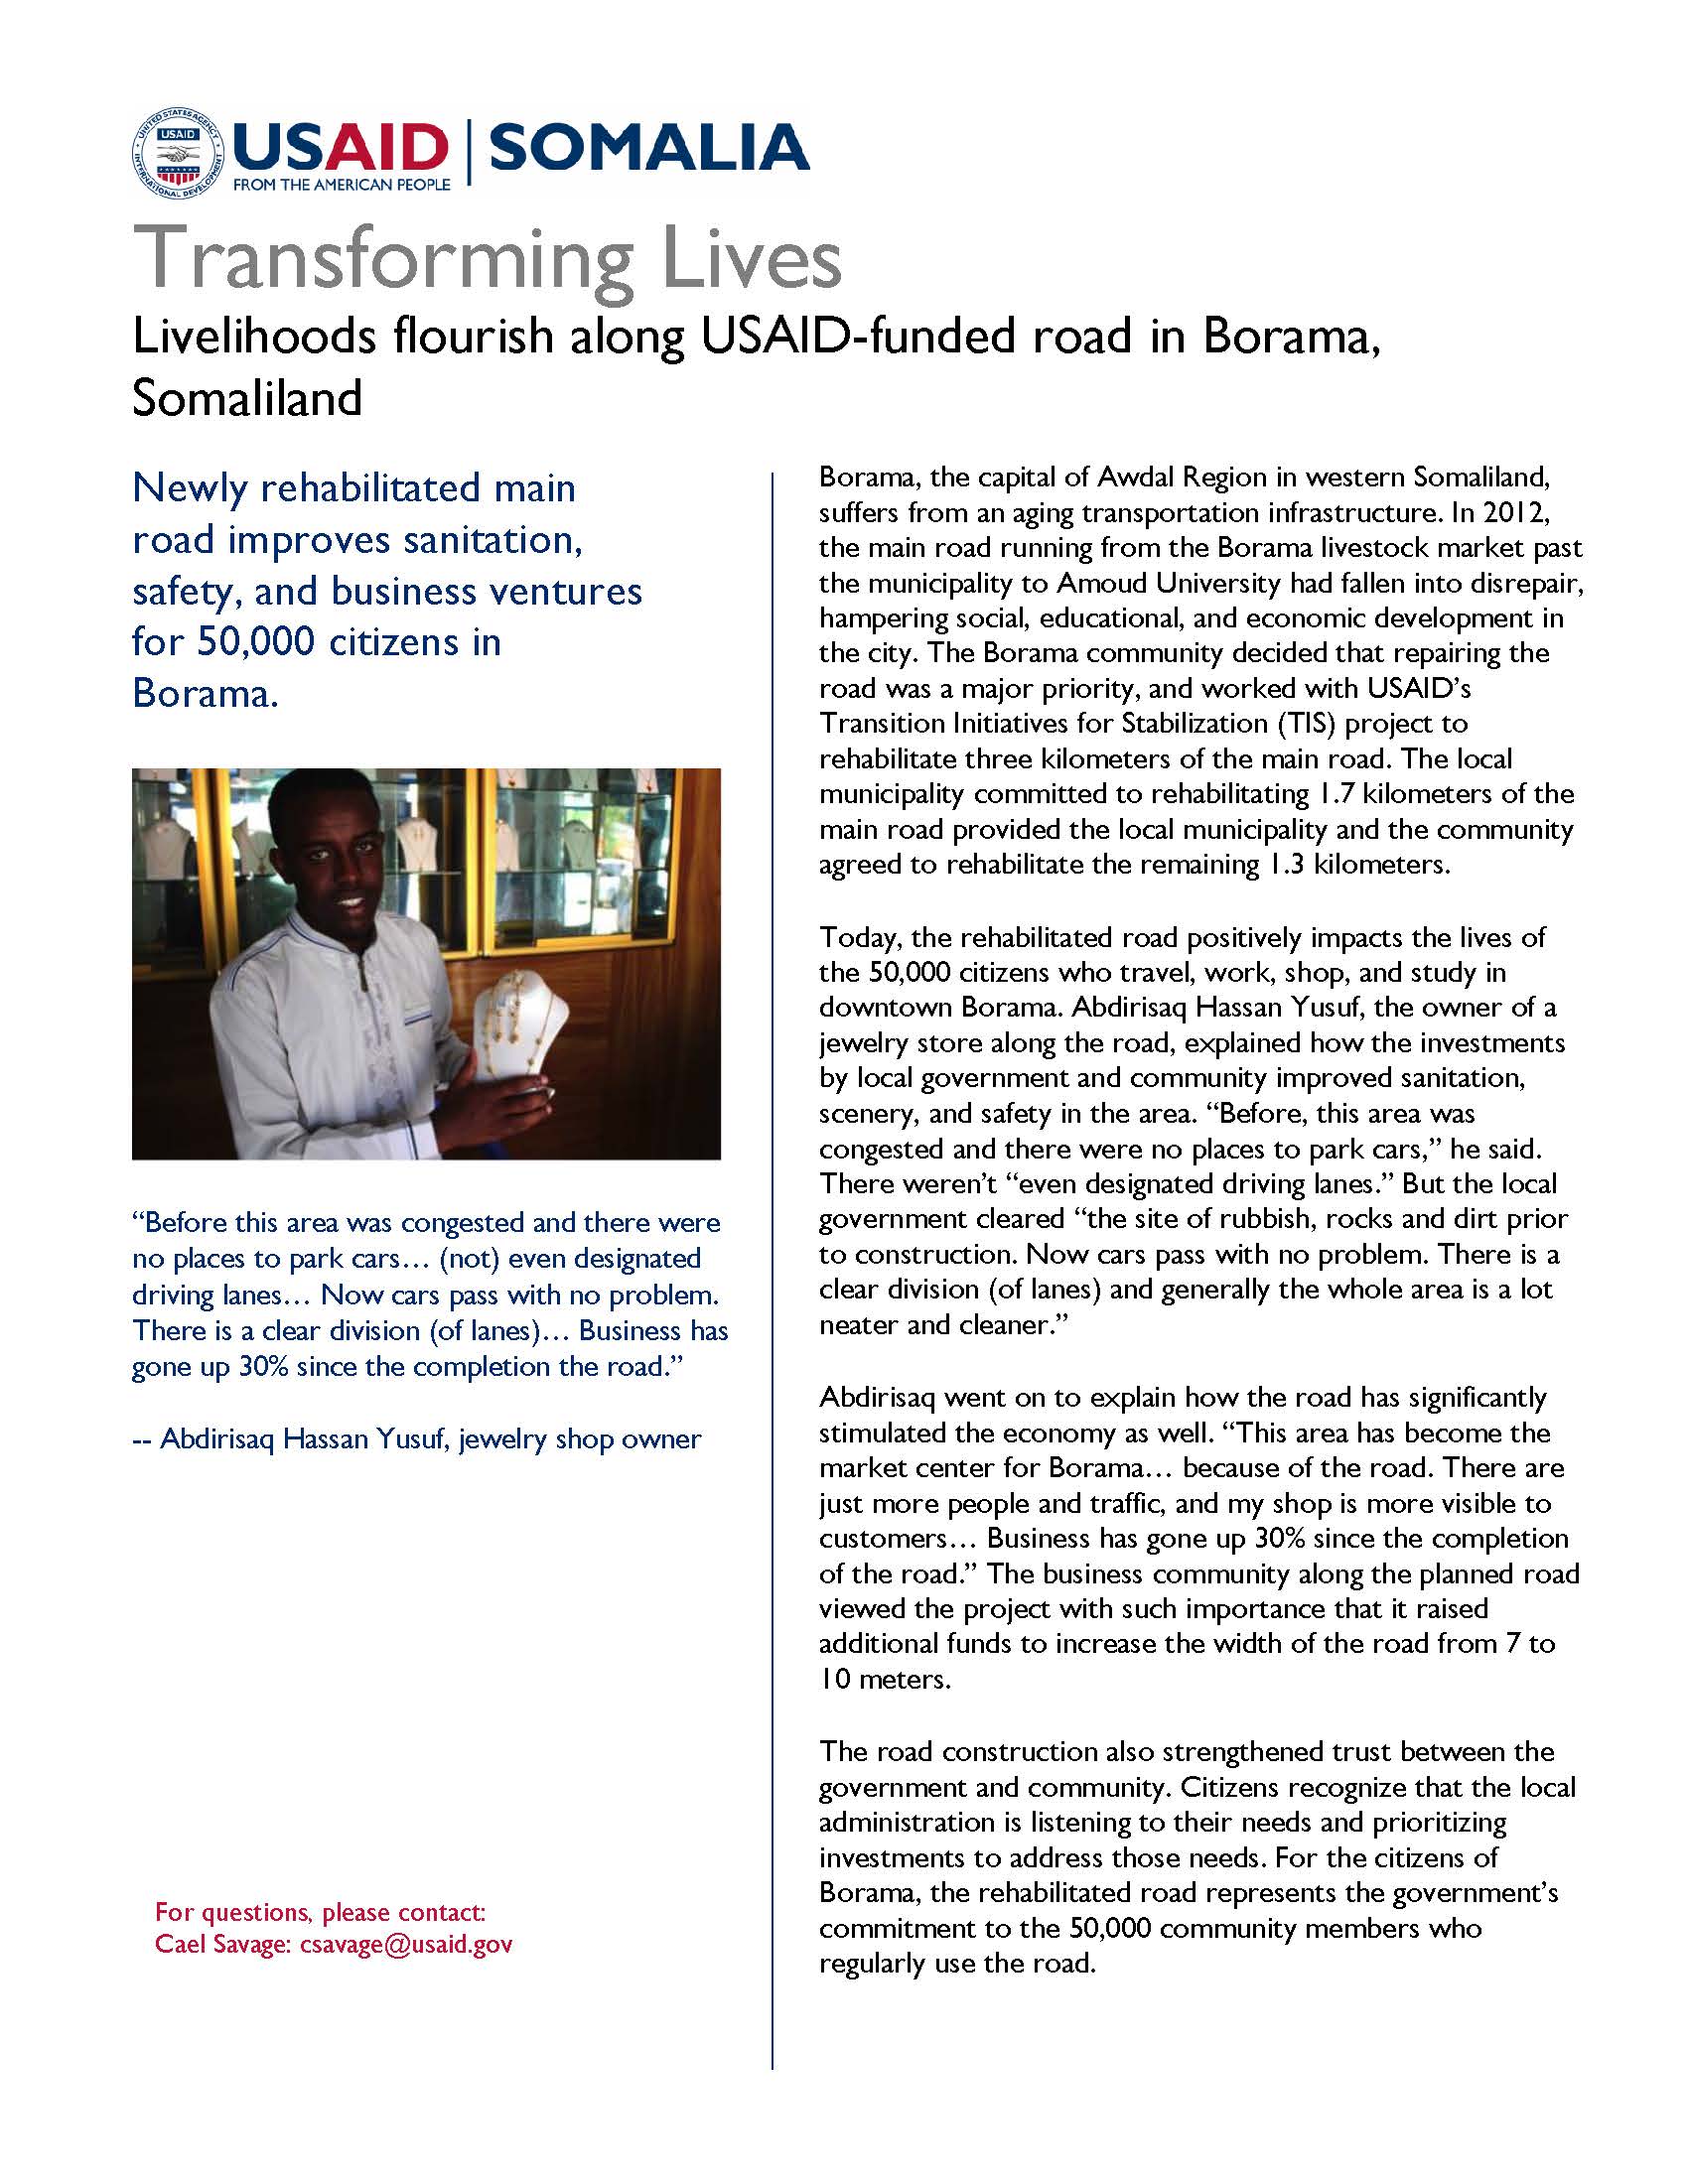 Livelihoods flourish along USAID-funded road in Borama, Somaliland